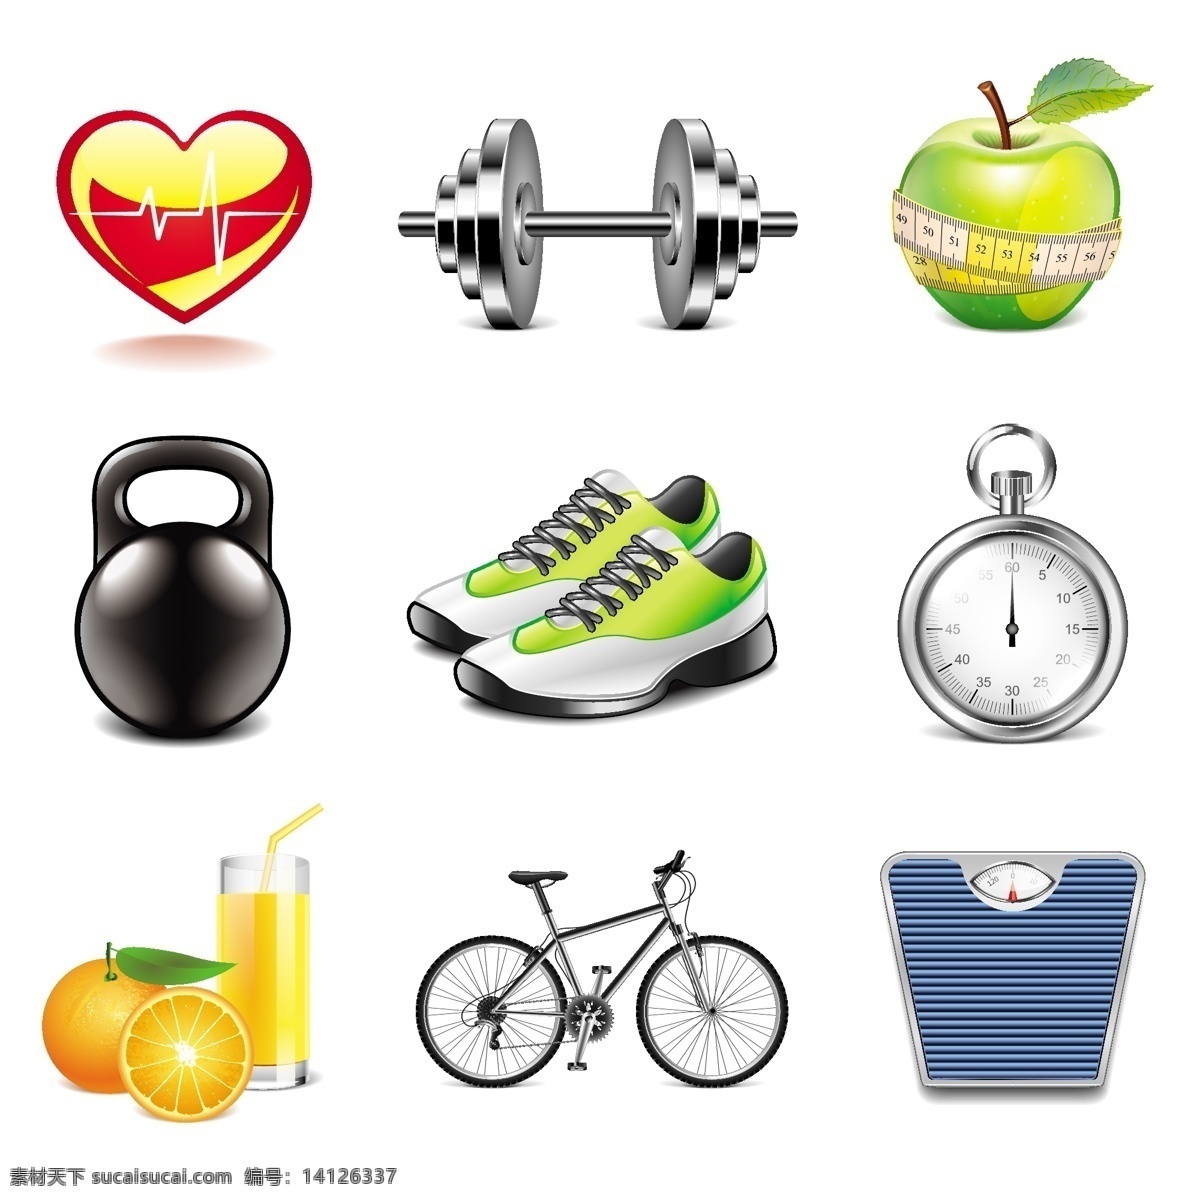 精美 运动 健身 图标 橙汁 尺子 举重 秒表 苹果 运动鞋 自行车 哑铃 心率 计时器 体重称 矢量图 其他矢量图